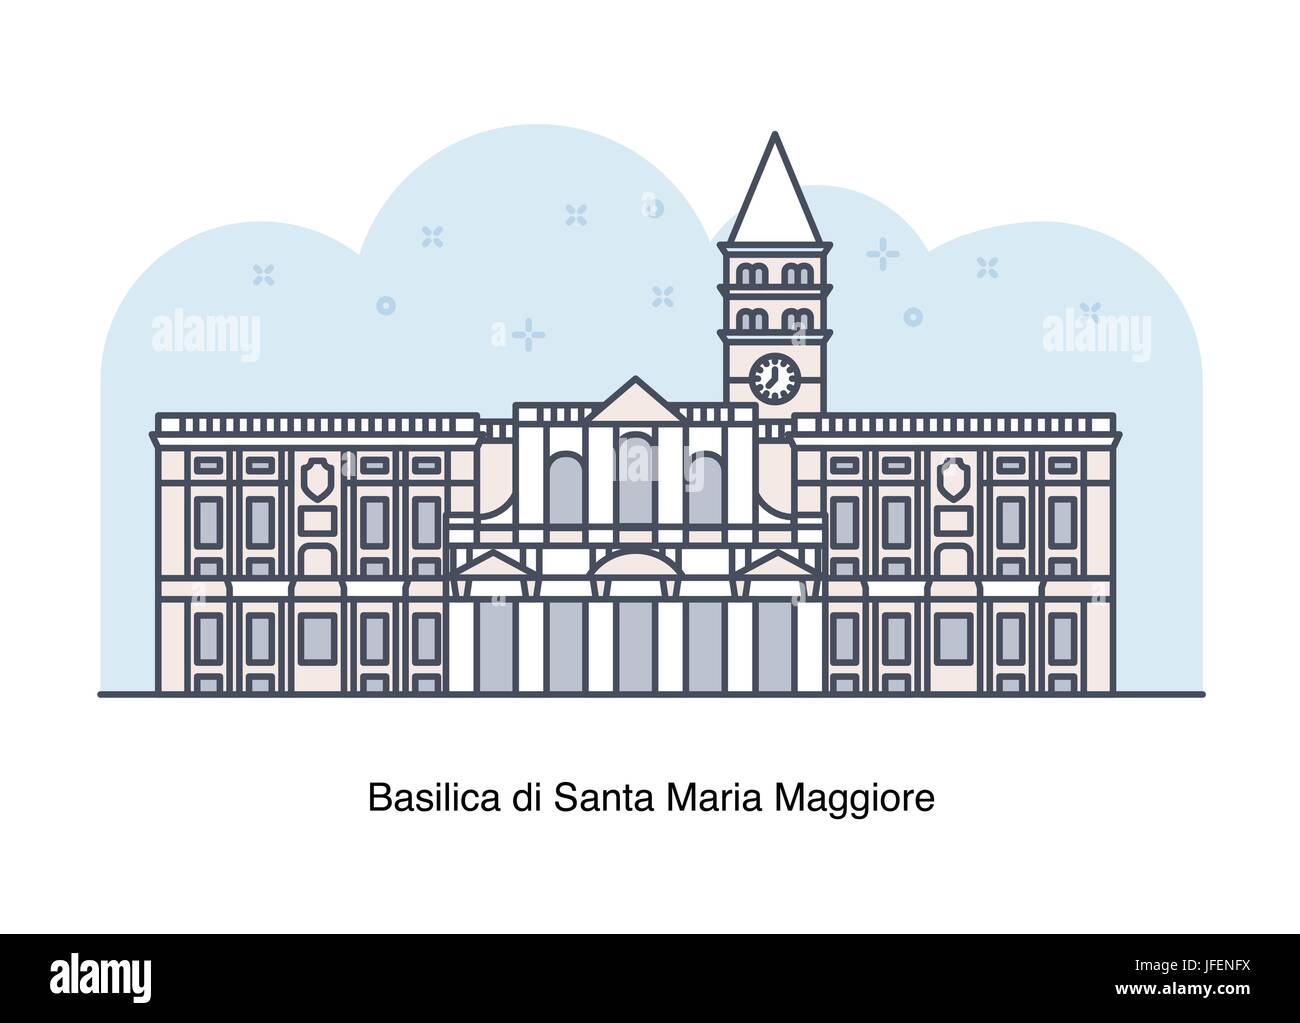 Vector line illustration of Basilica di Santa Maria Maggiore, Rome, Italy. Stock Vector